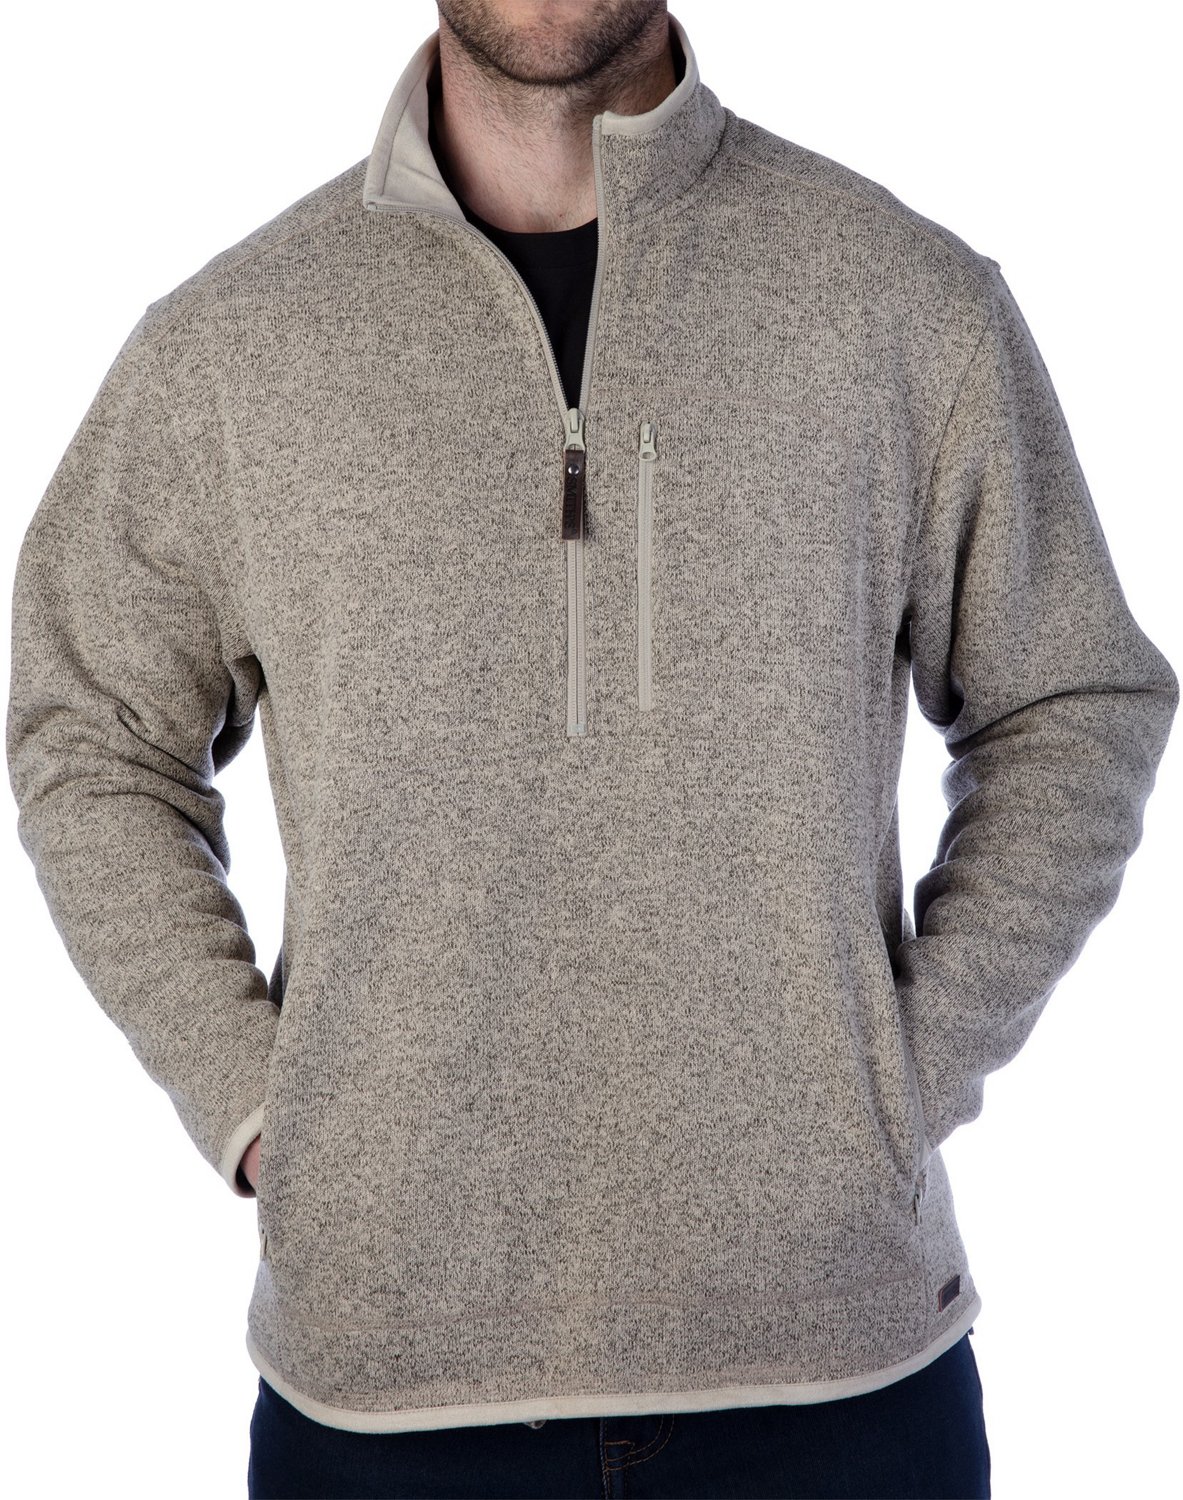 Smith's Workwear Men's 1/4 Zip Sweater Fleece Jacket                                                                             - view number 1 selected